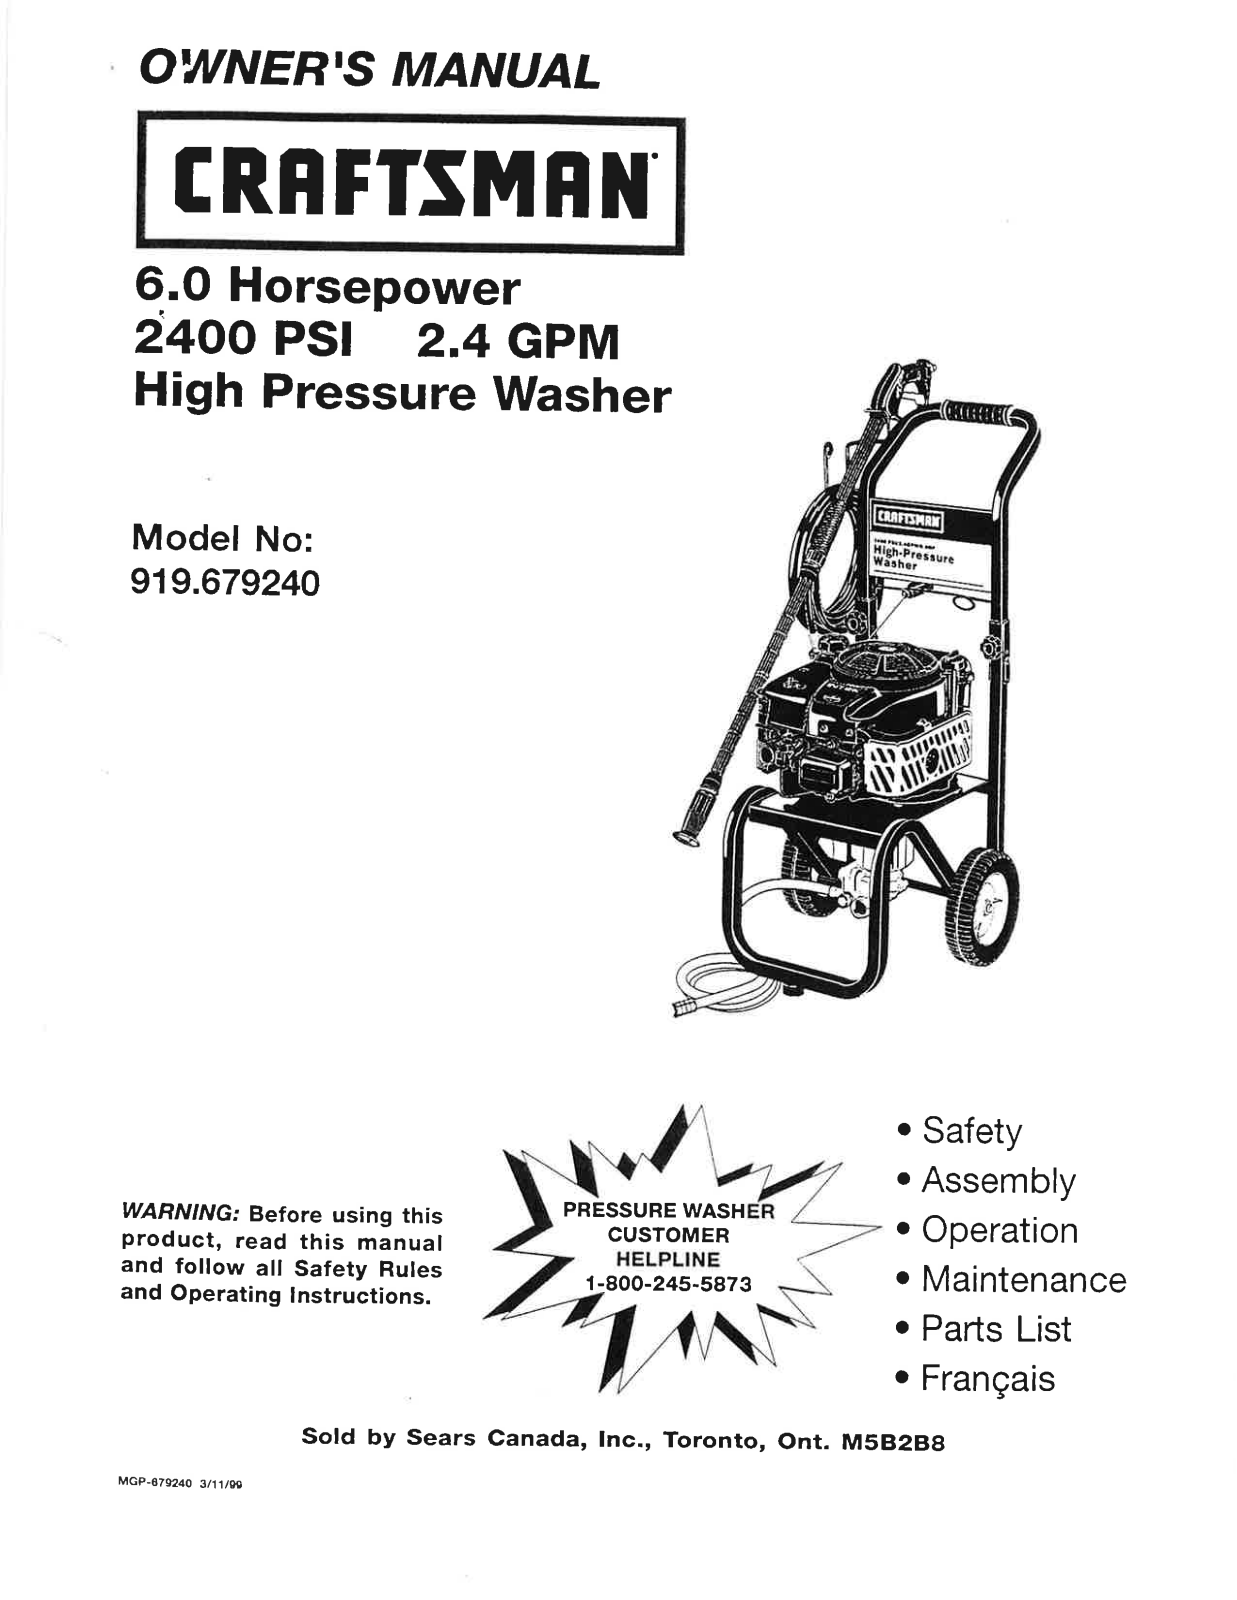 Craftsman MGP-879240 User Manual